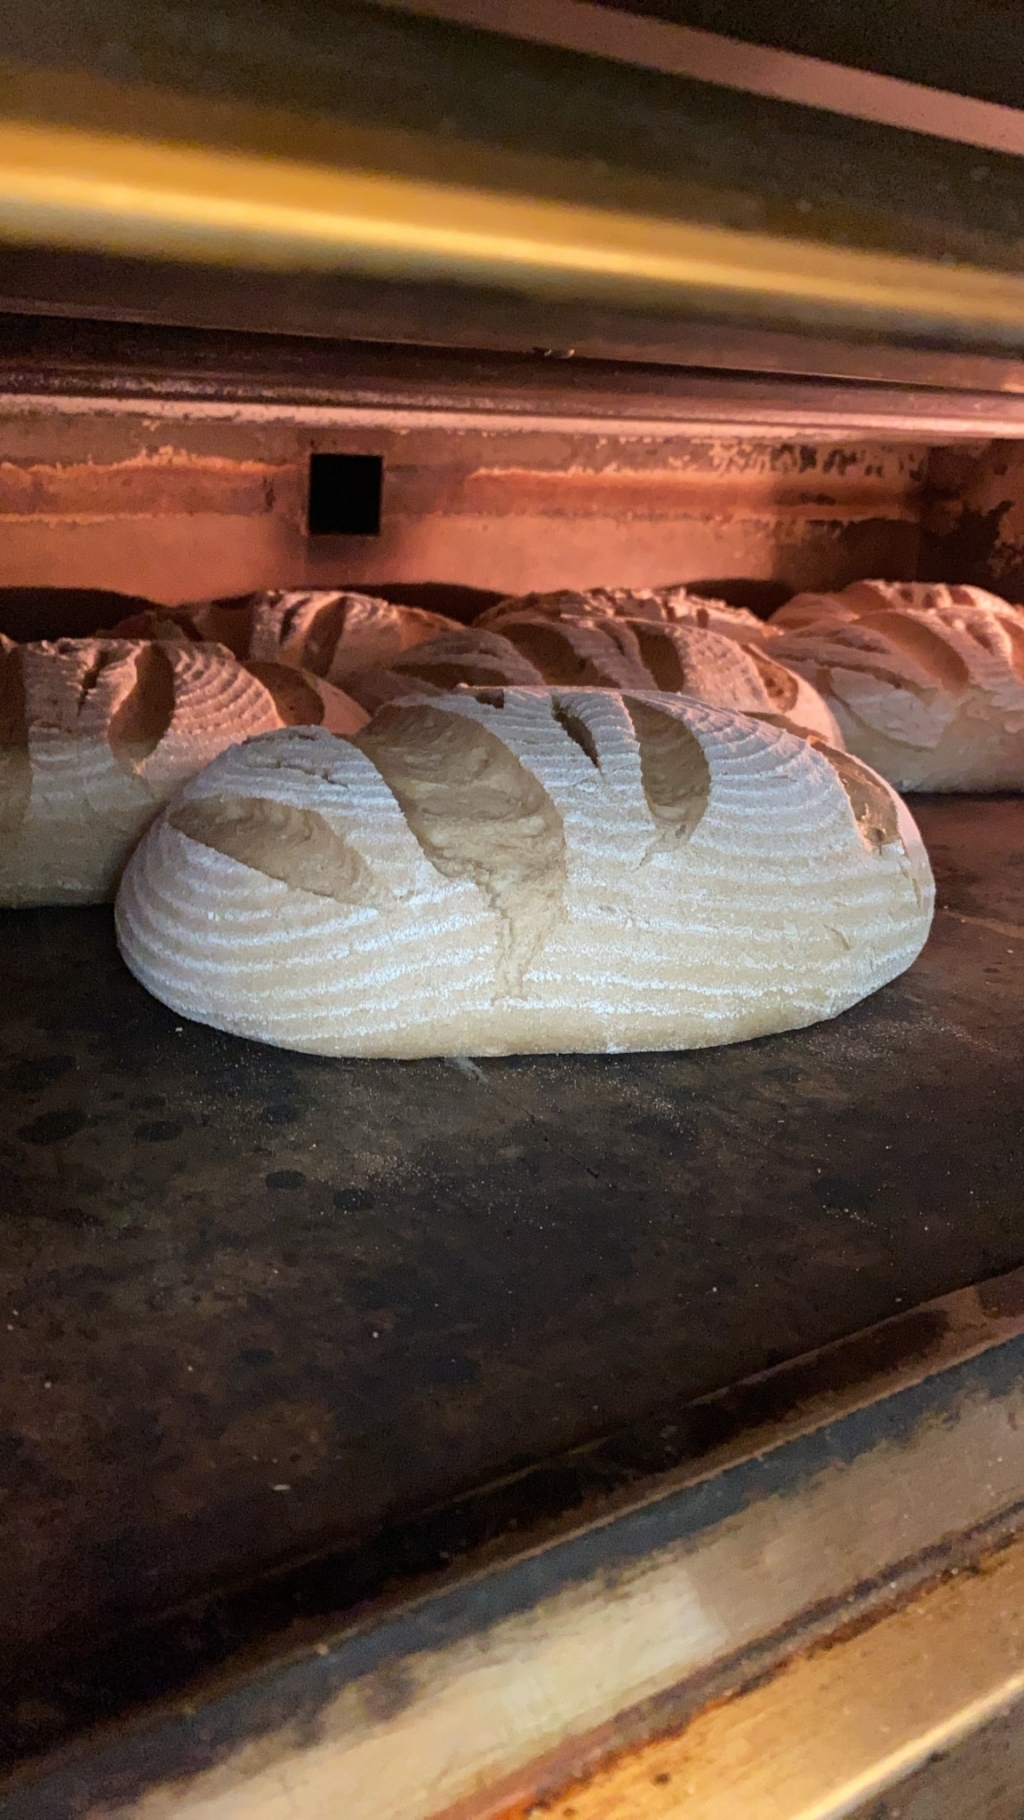 Brot im Backofen